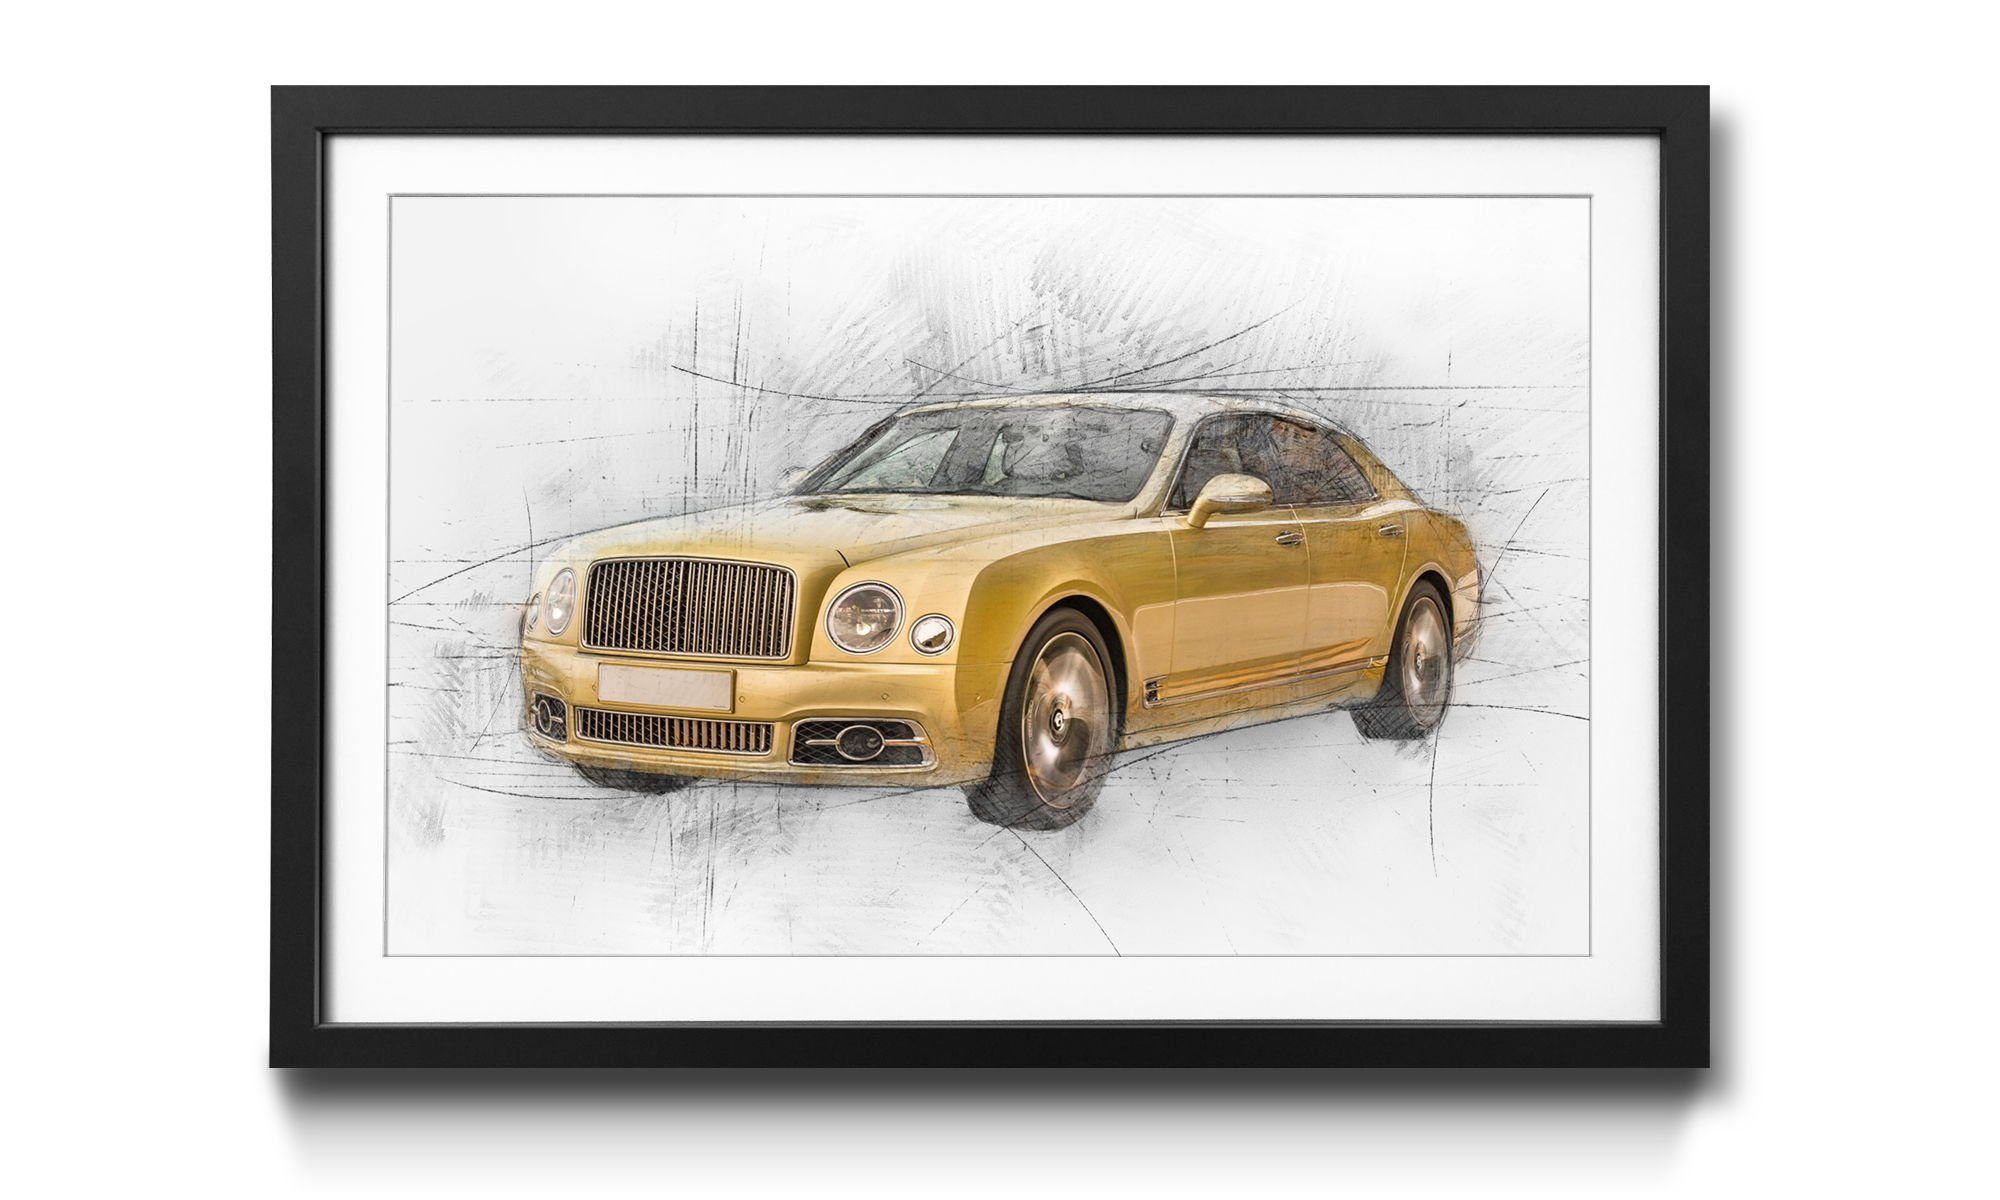 Größen erhältlich Wandbild, Golden mit Bent, Auto, Bild in WandbilderXXL Rahmen 4